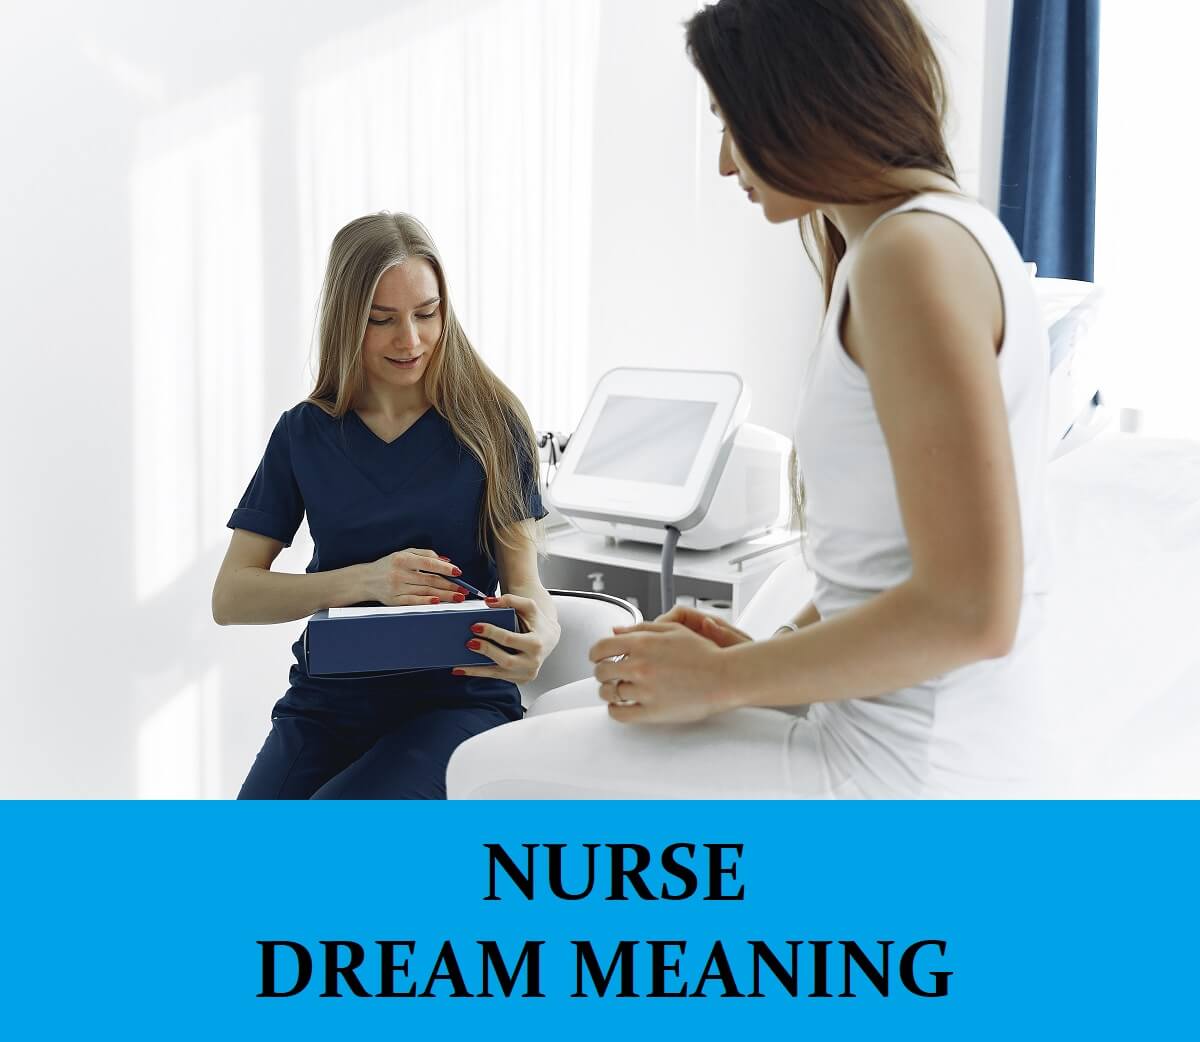 Dream About Nurses